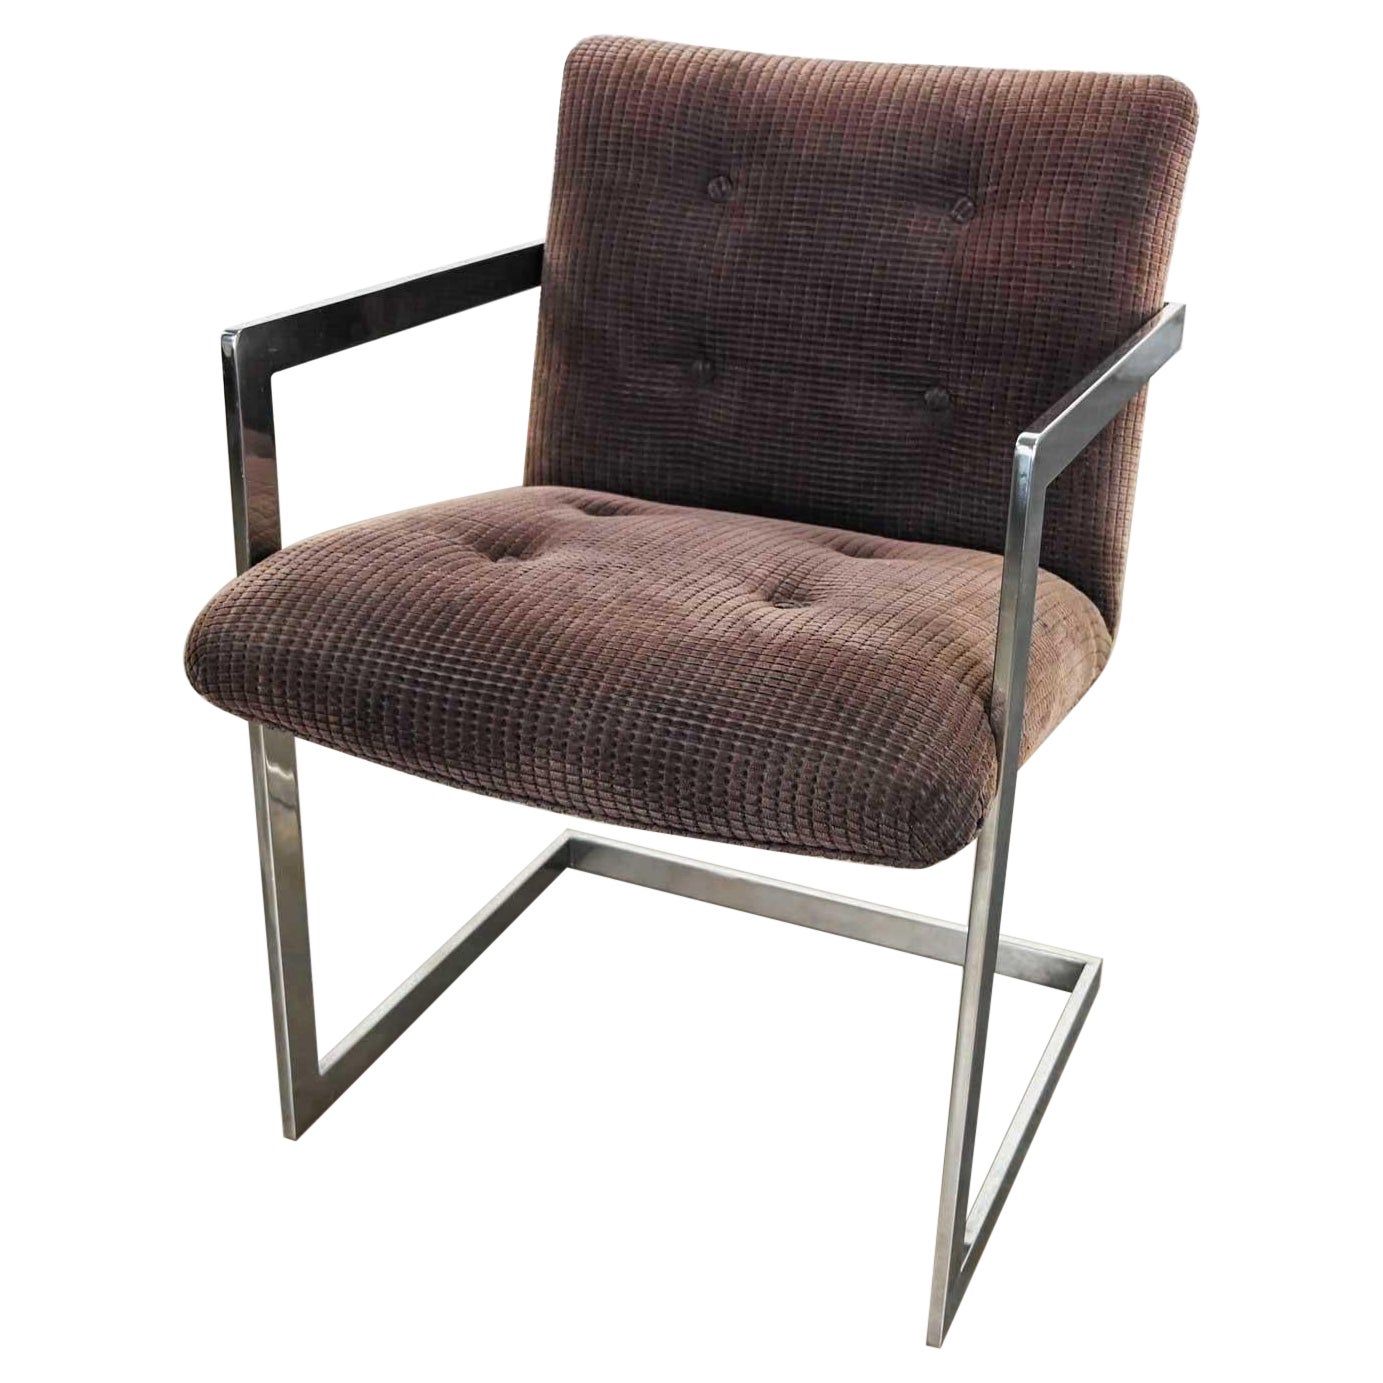 Chaise cantilever moderne vintage chromée et marron en chenille de style Brno par Knoll